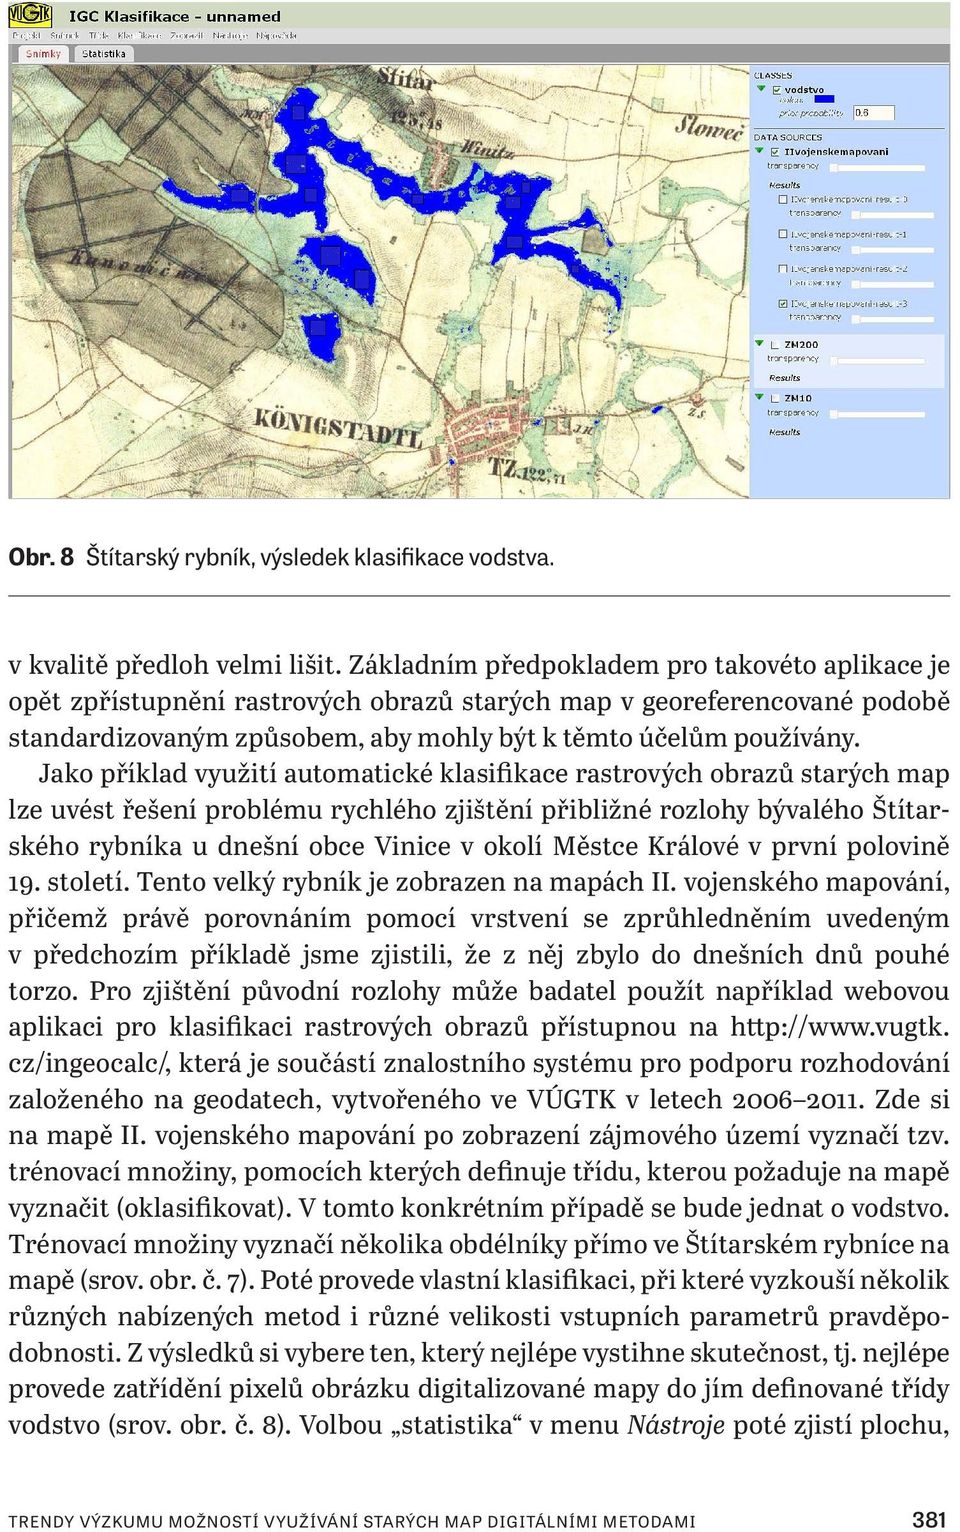 Jako příklad využití automatické klasifikace rastrových obrazů starých map lze uvést řešení problému rychlého zjištění přibližné rozlohy bývalého Štítarského rybníka u dnešní obce Vinice v okolí